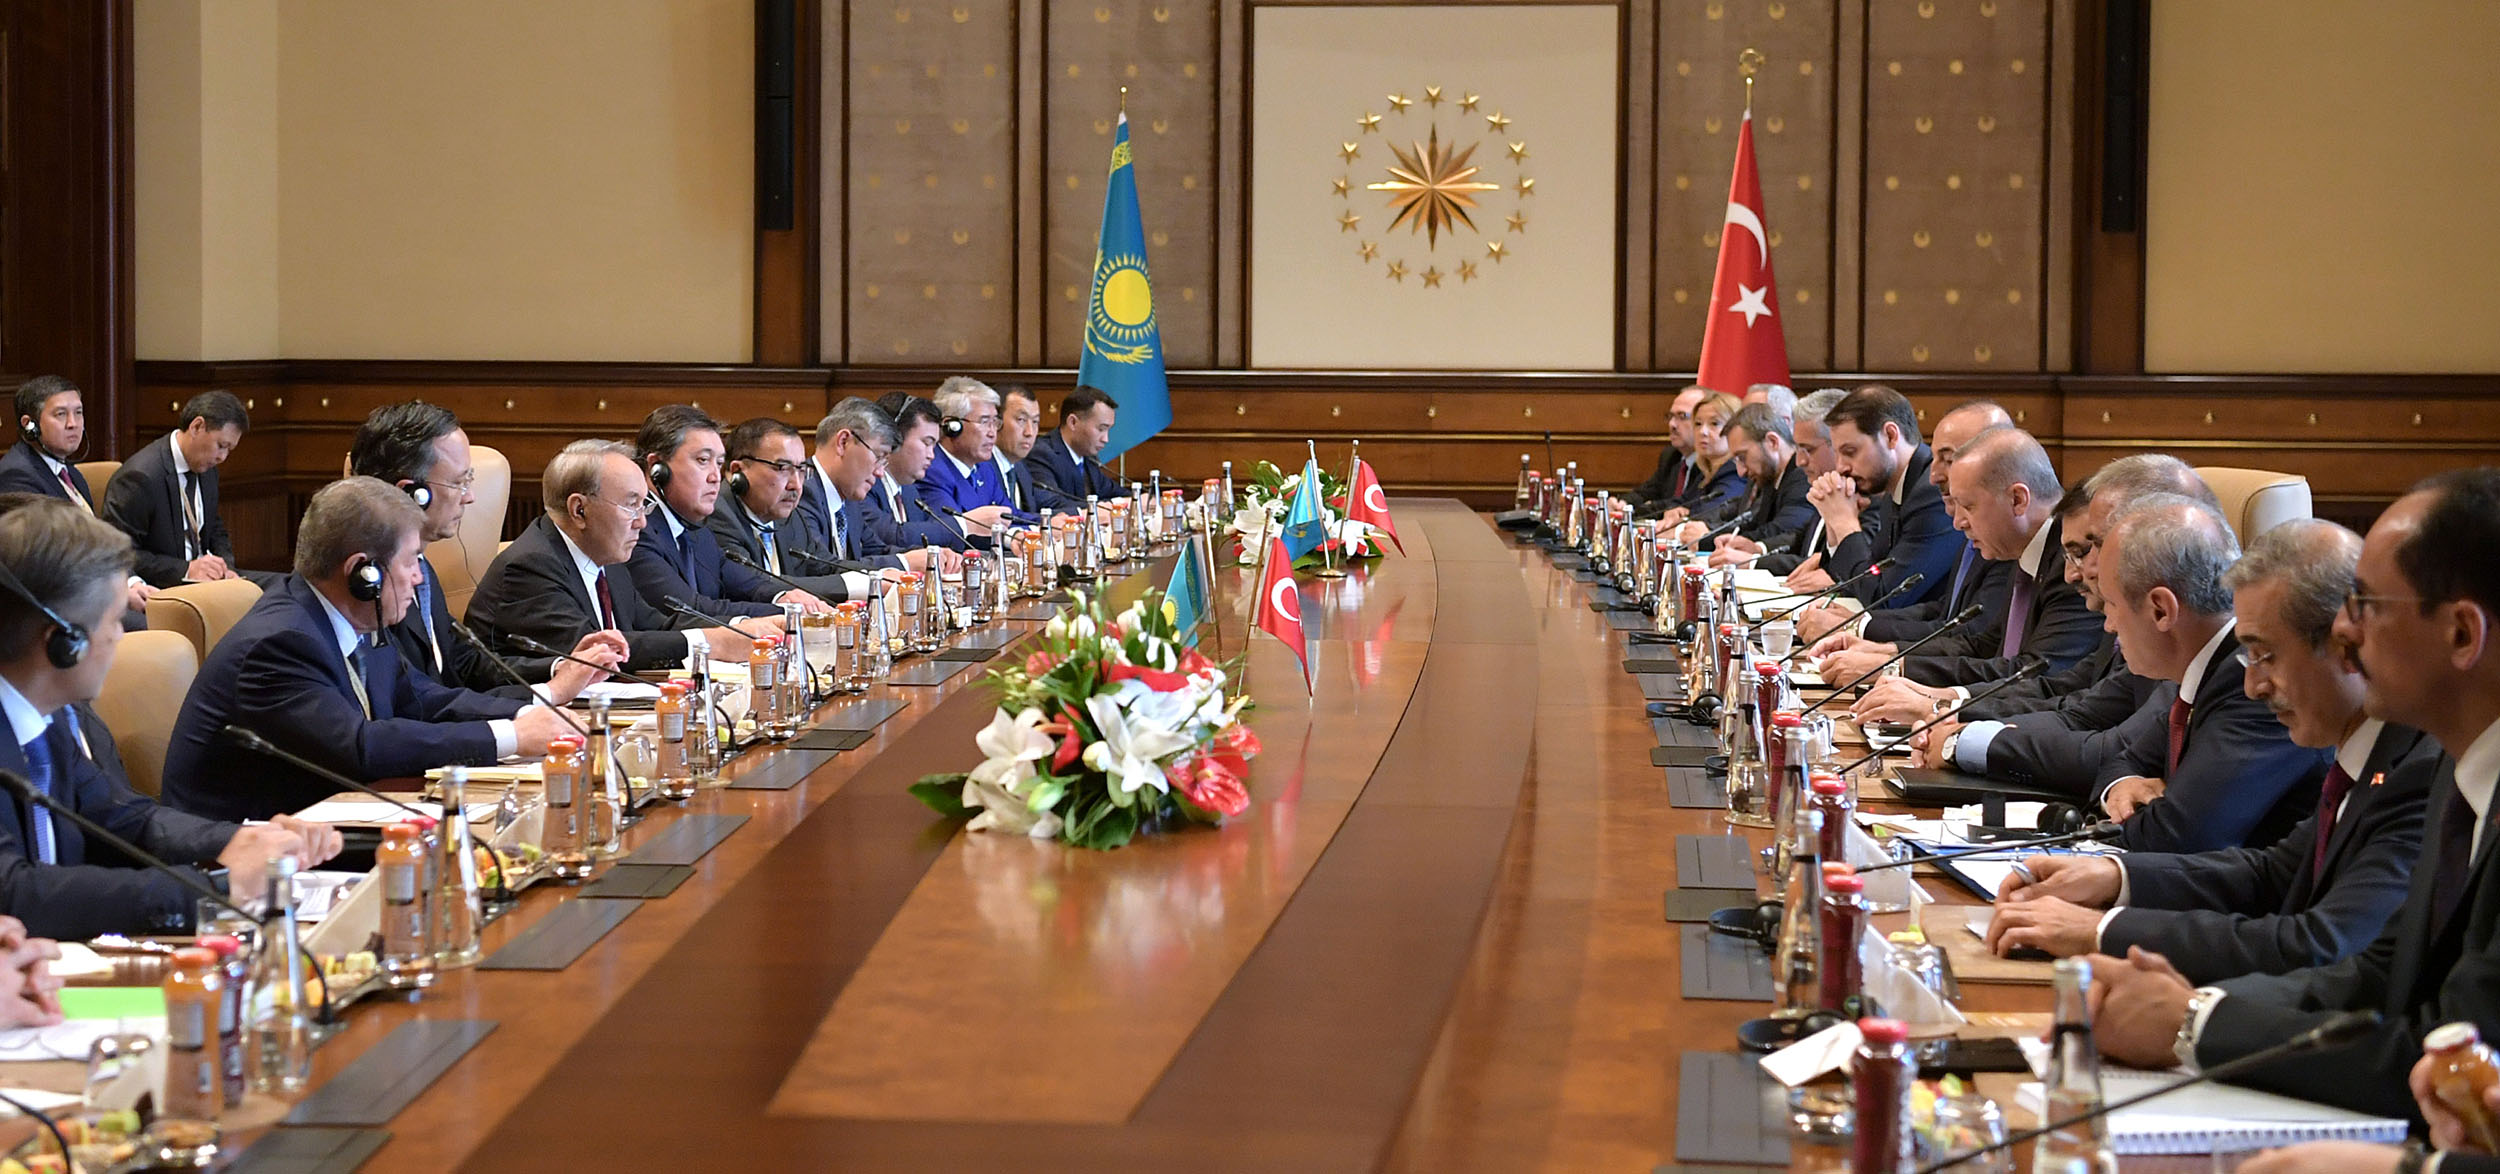 Мемлекет басшысы Қазақстан мен Түркия арасындағы стратегиялық ынтымақтастық кеңесінің отырысына қатысты